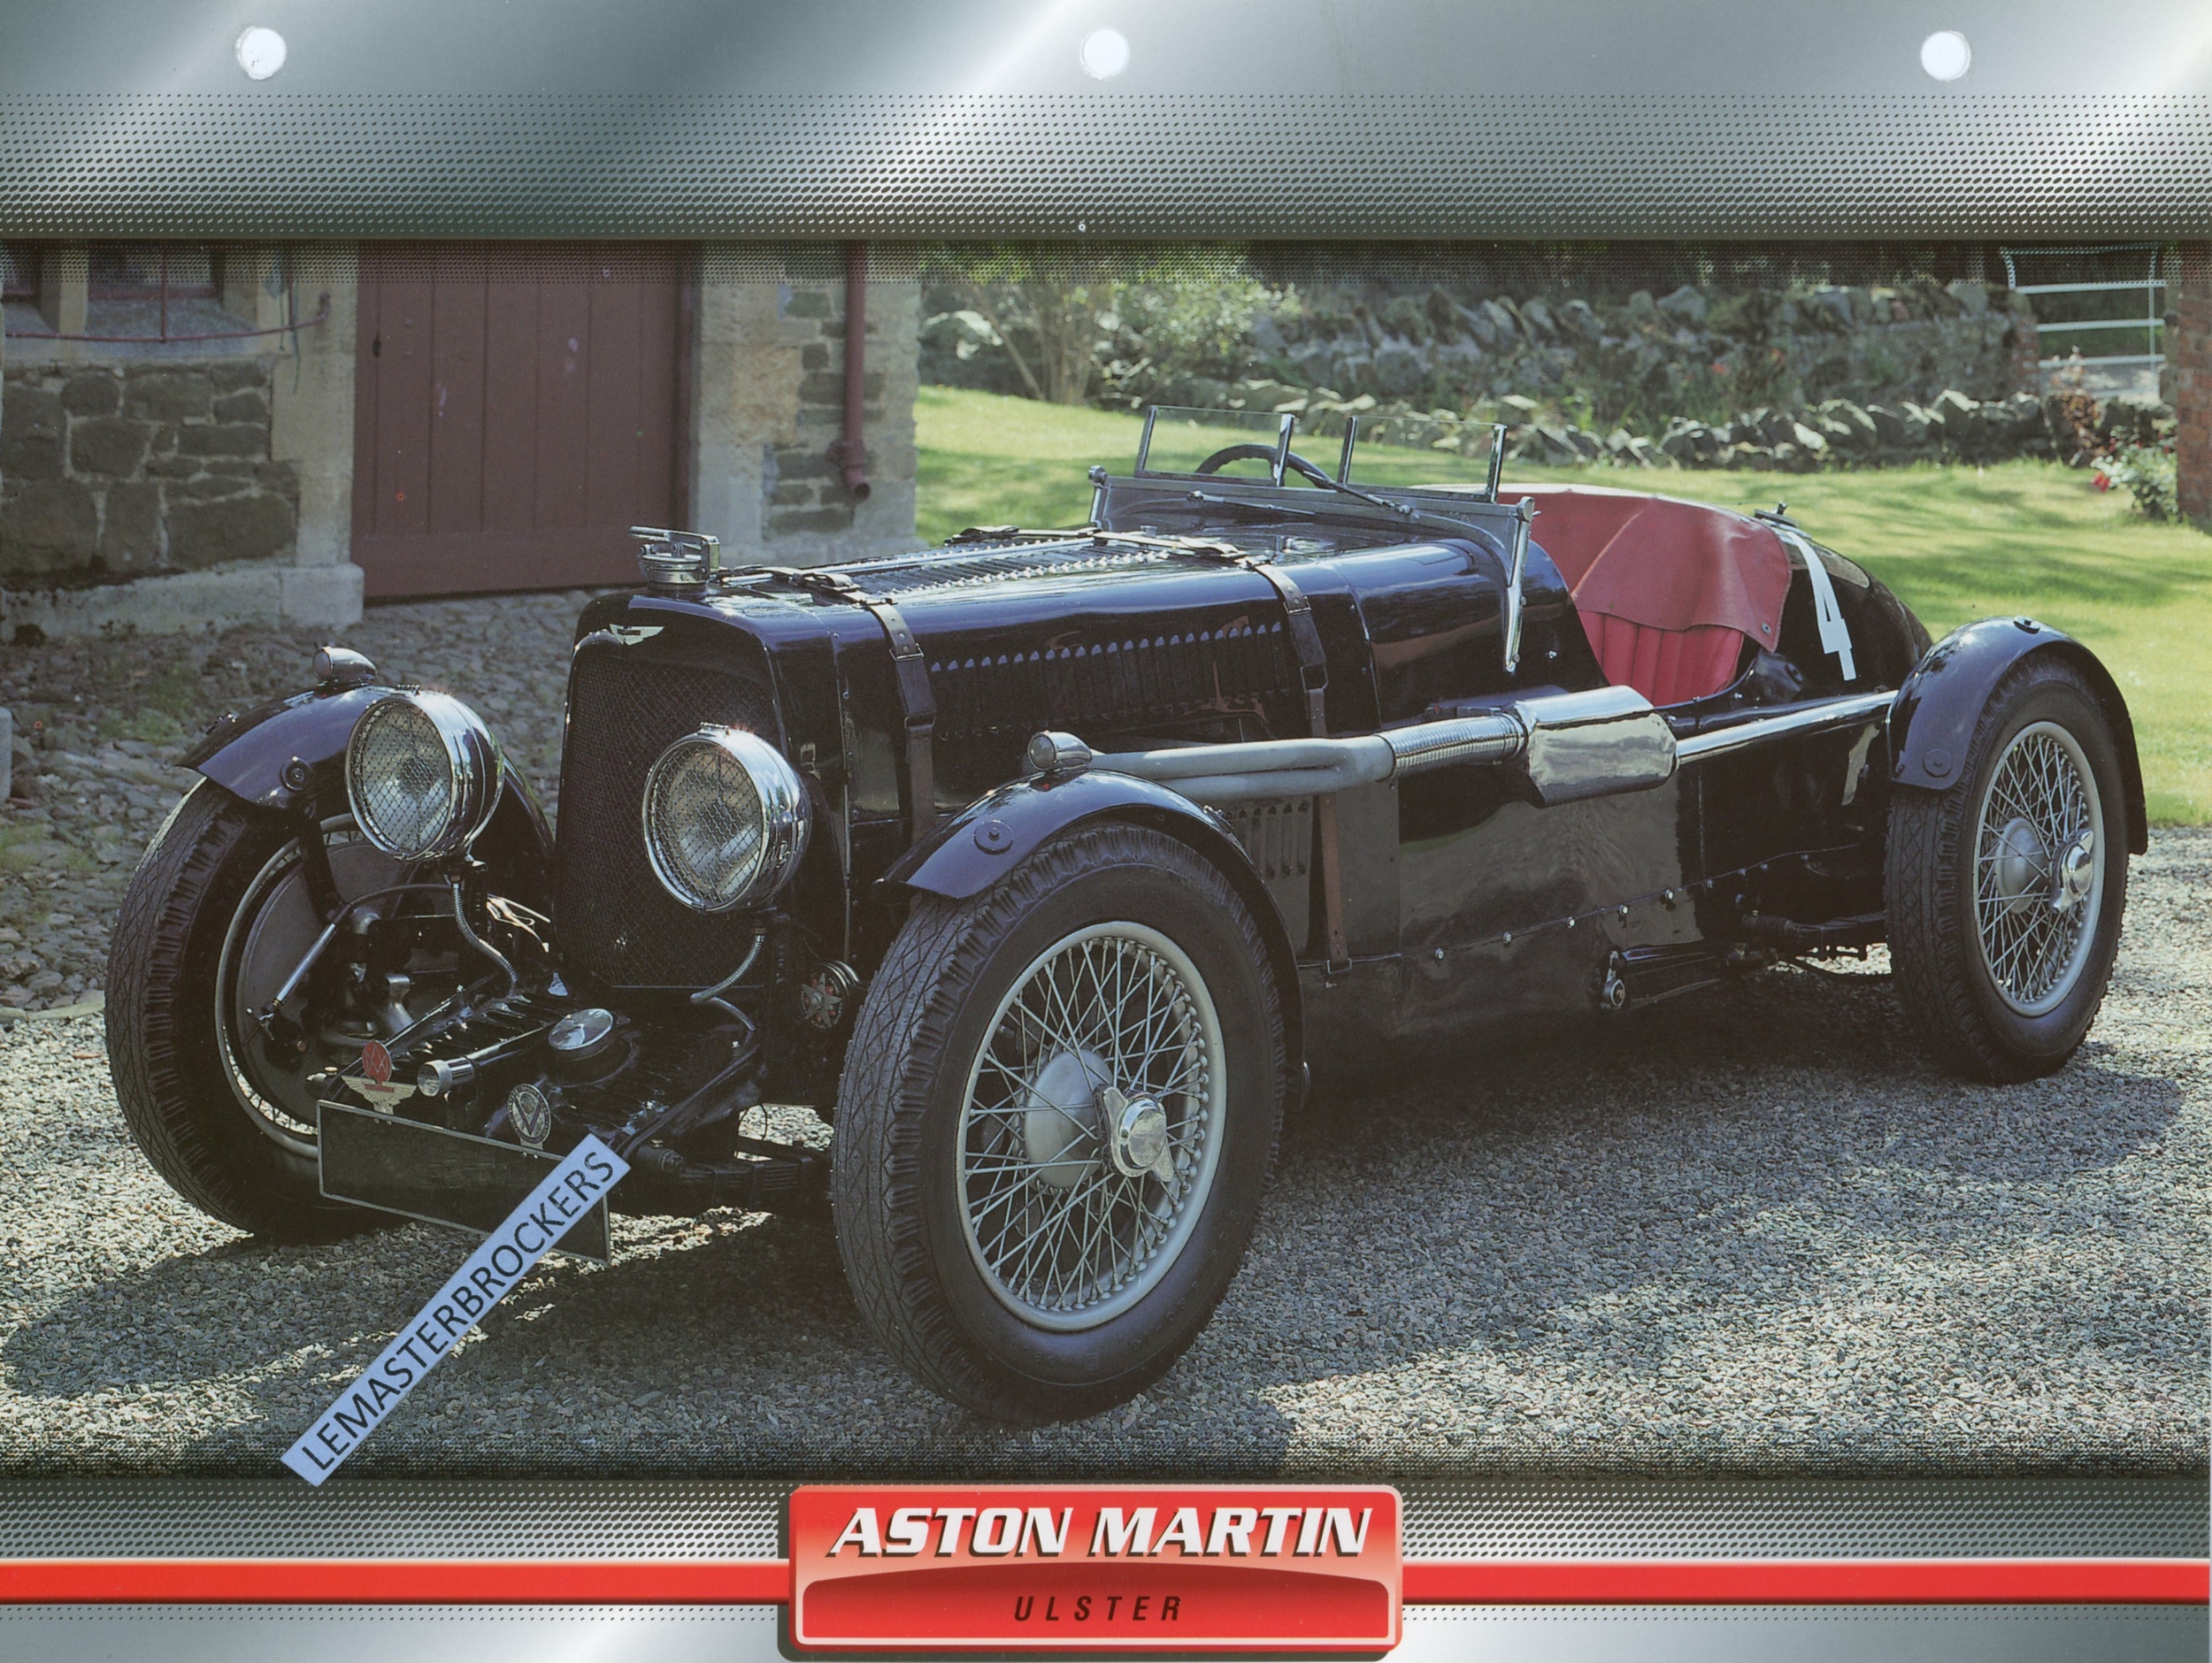 ASTON-MARTIN-ULSTER-1934-FICHE-AUTO-TECHNIQUE-LEMASTERBROCKERS-FICHE-ATLAS